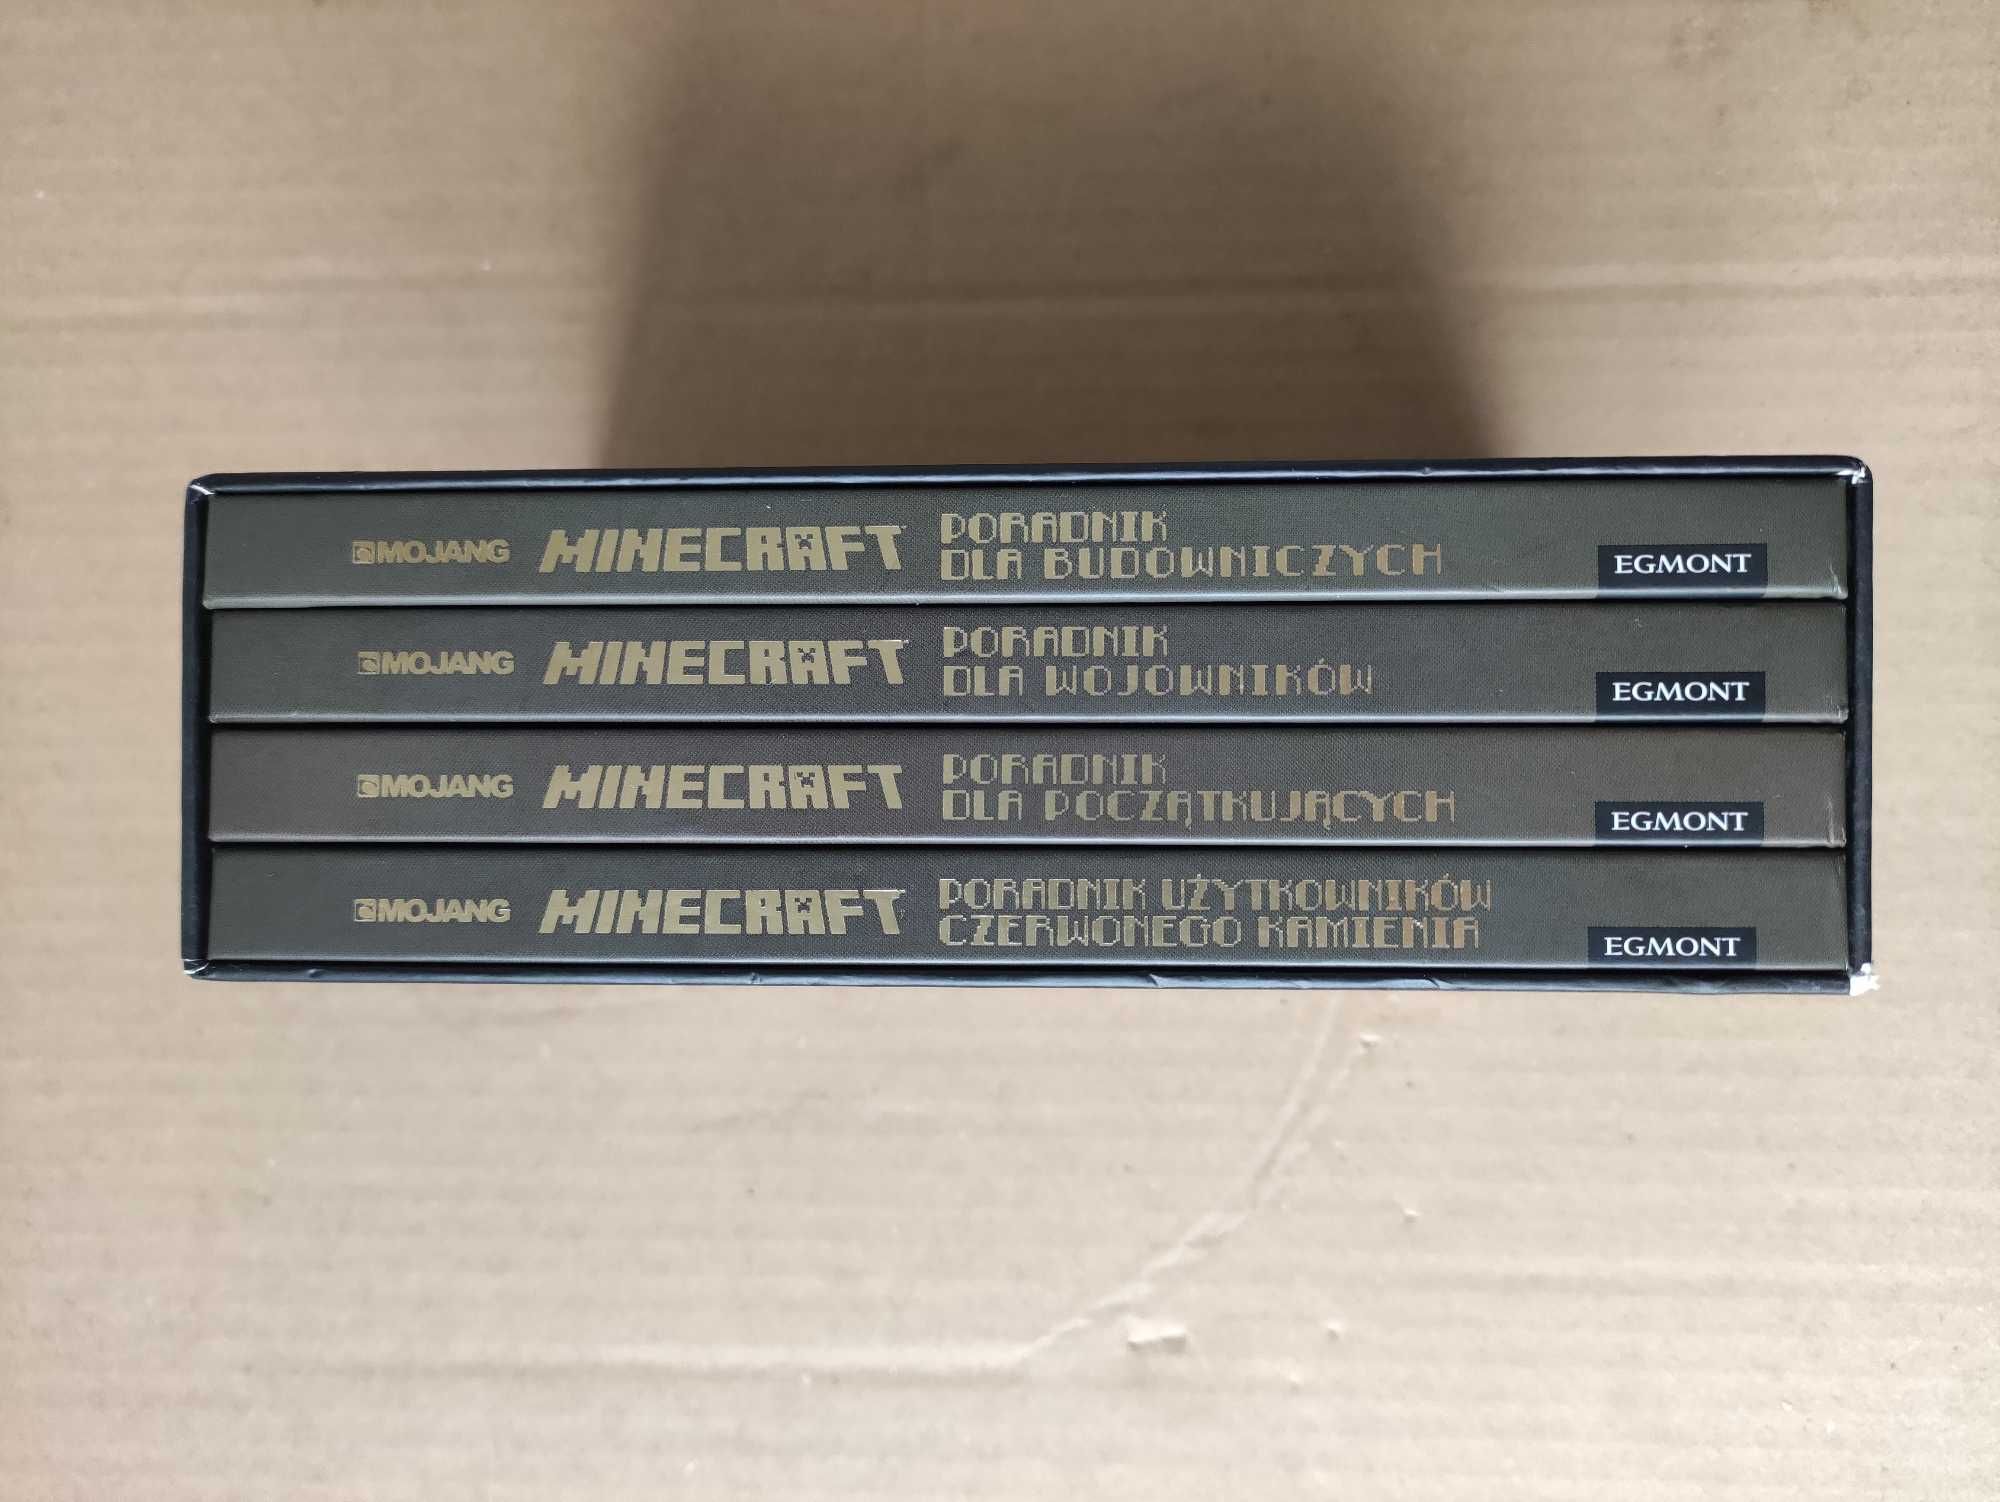 Zestaw kolekcjonerski MINECRAFT - Poradniki